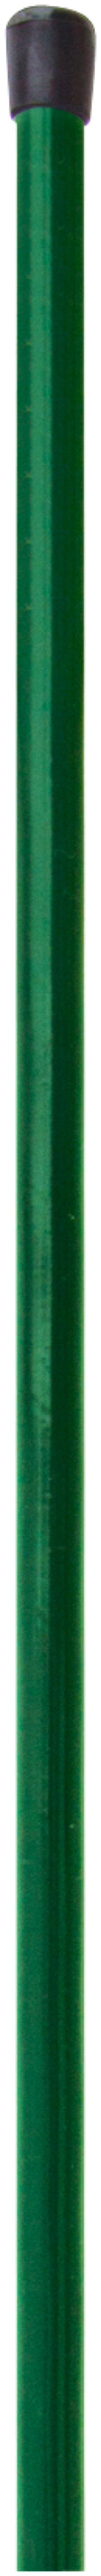 H+S Geflechtspannstab grün 1,2 m